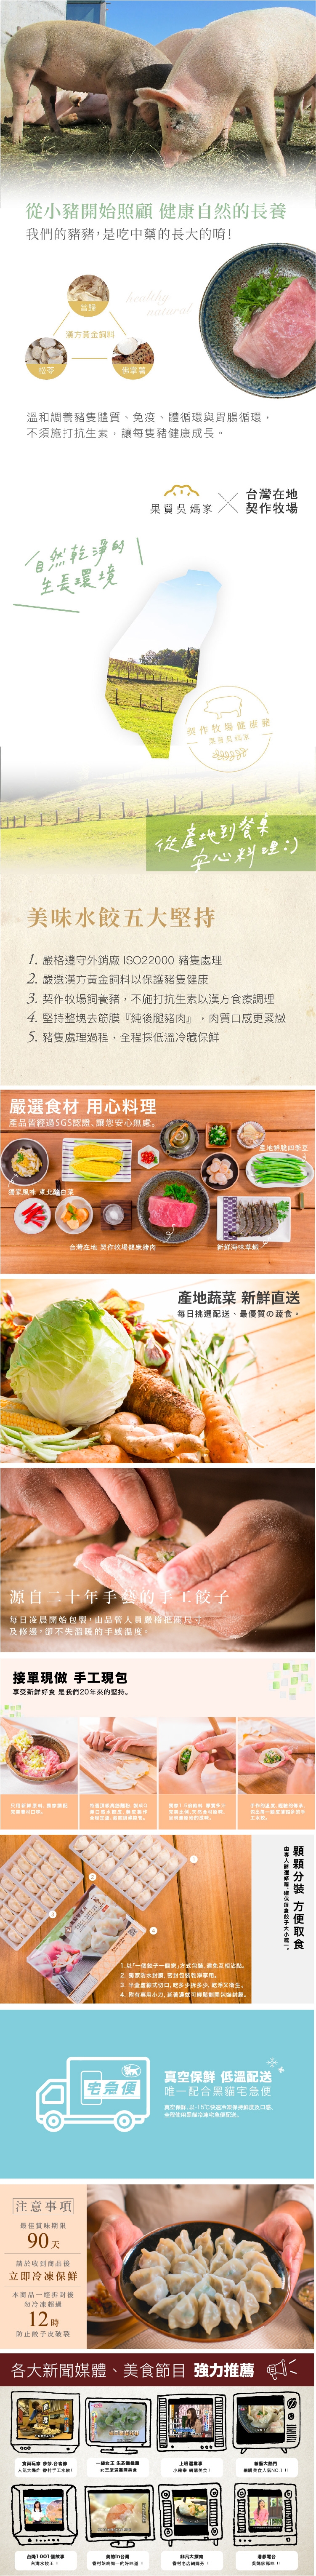 果貿吳媽家韭黃鮮肉水餃(1盒/24入)